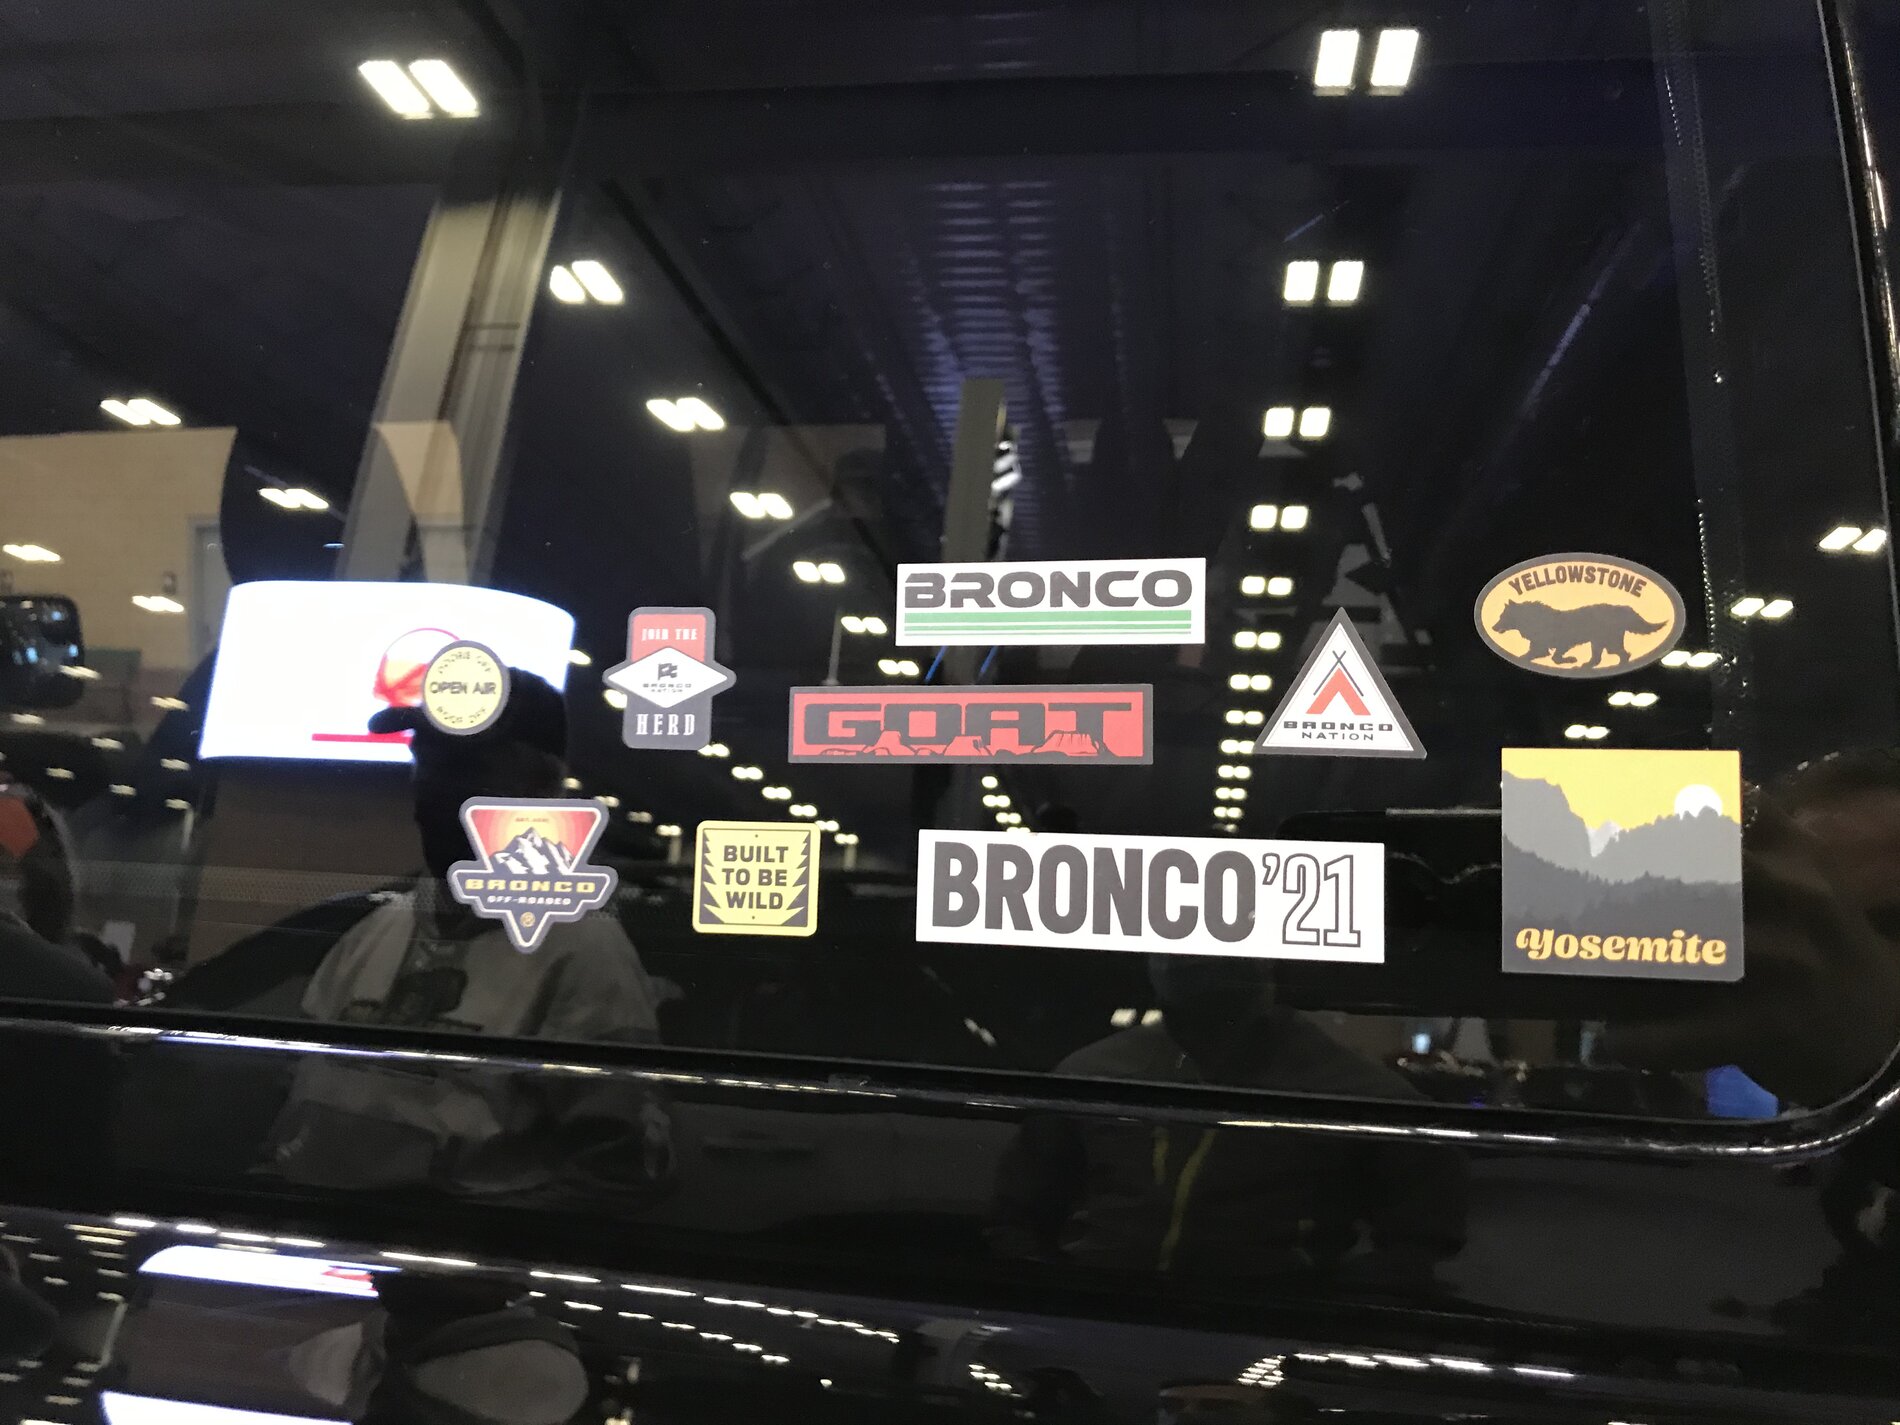 Ford Bronco Pics & Videos From OKC Show: 2-Door Trail Concept and Overland Concept Broncos 3E52EB00-8D29-45E7-ABD0-BC930CC48B5E